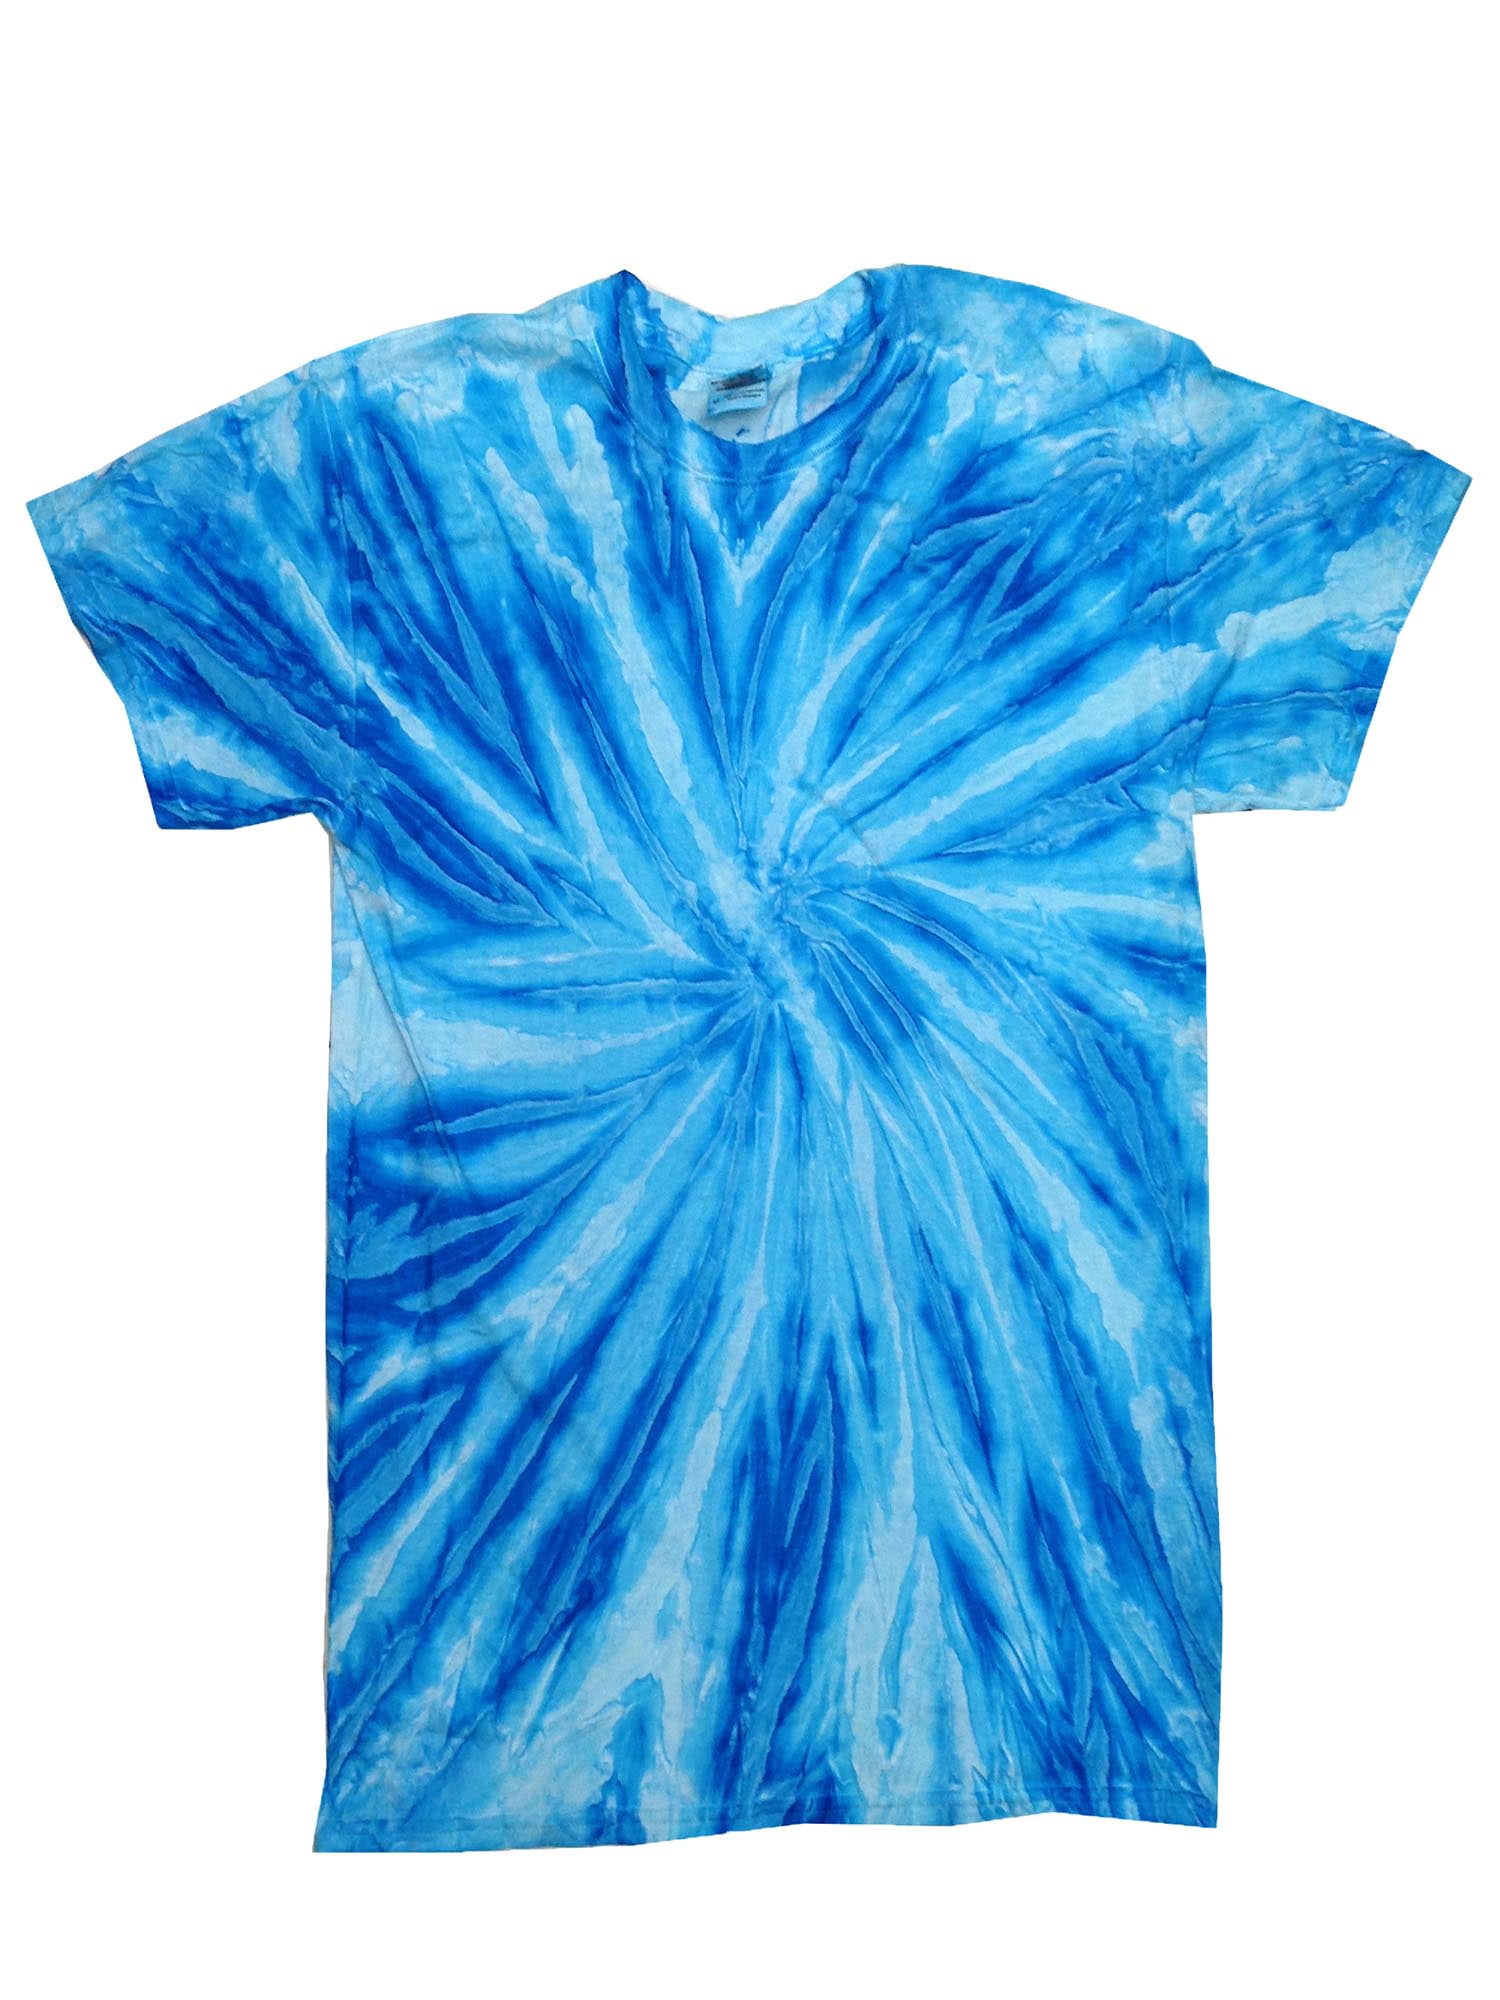 Colortone - Tie Dye T-Shirts Neon Twist Adult Sizes Multi Colors 100%